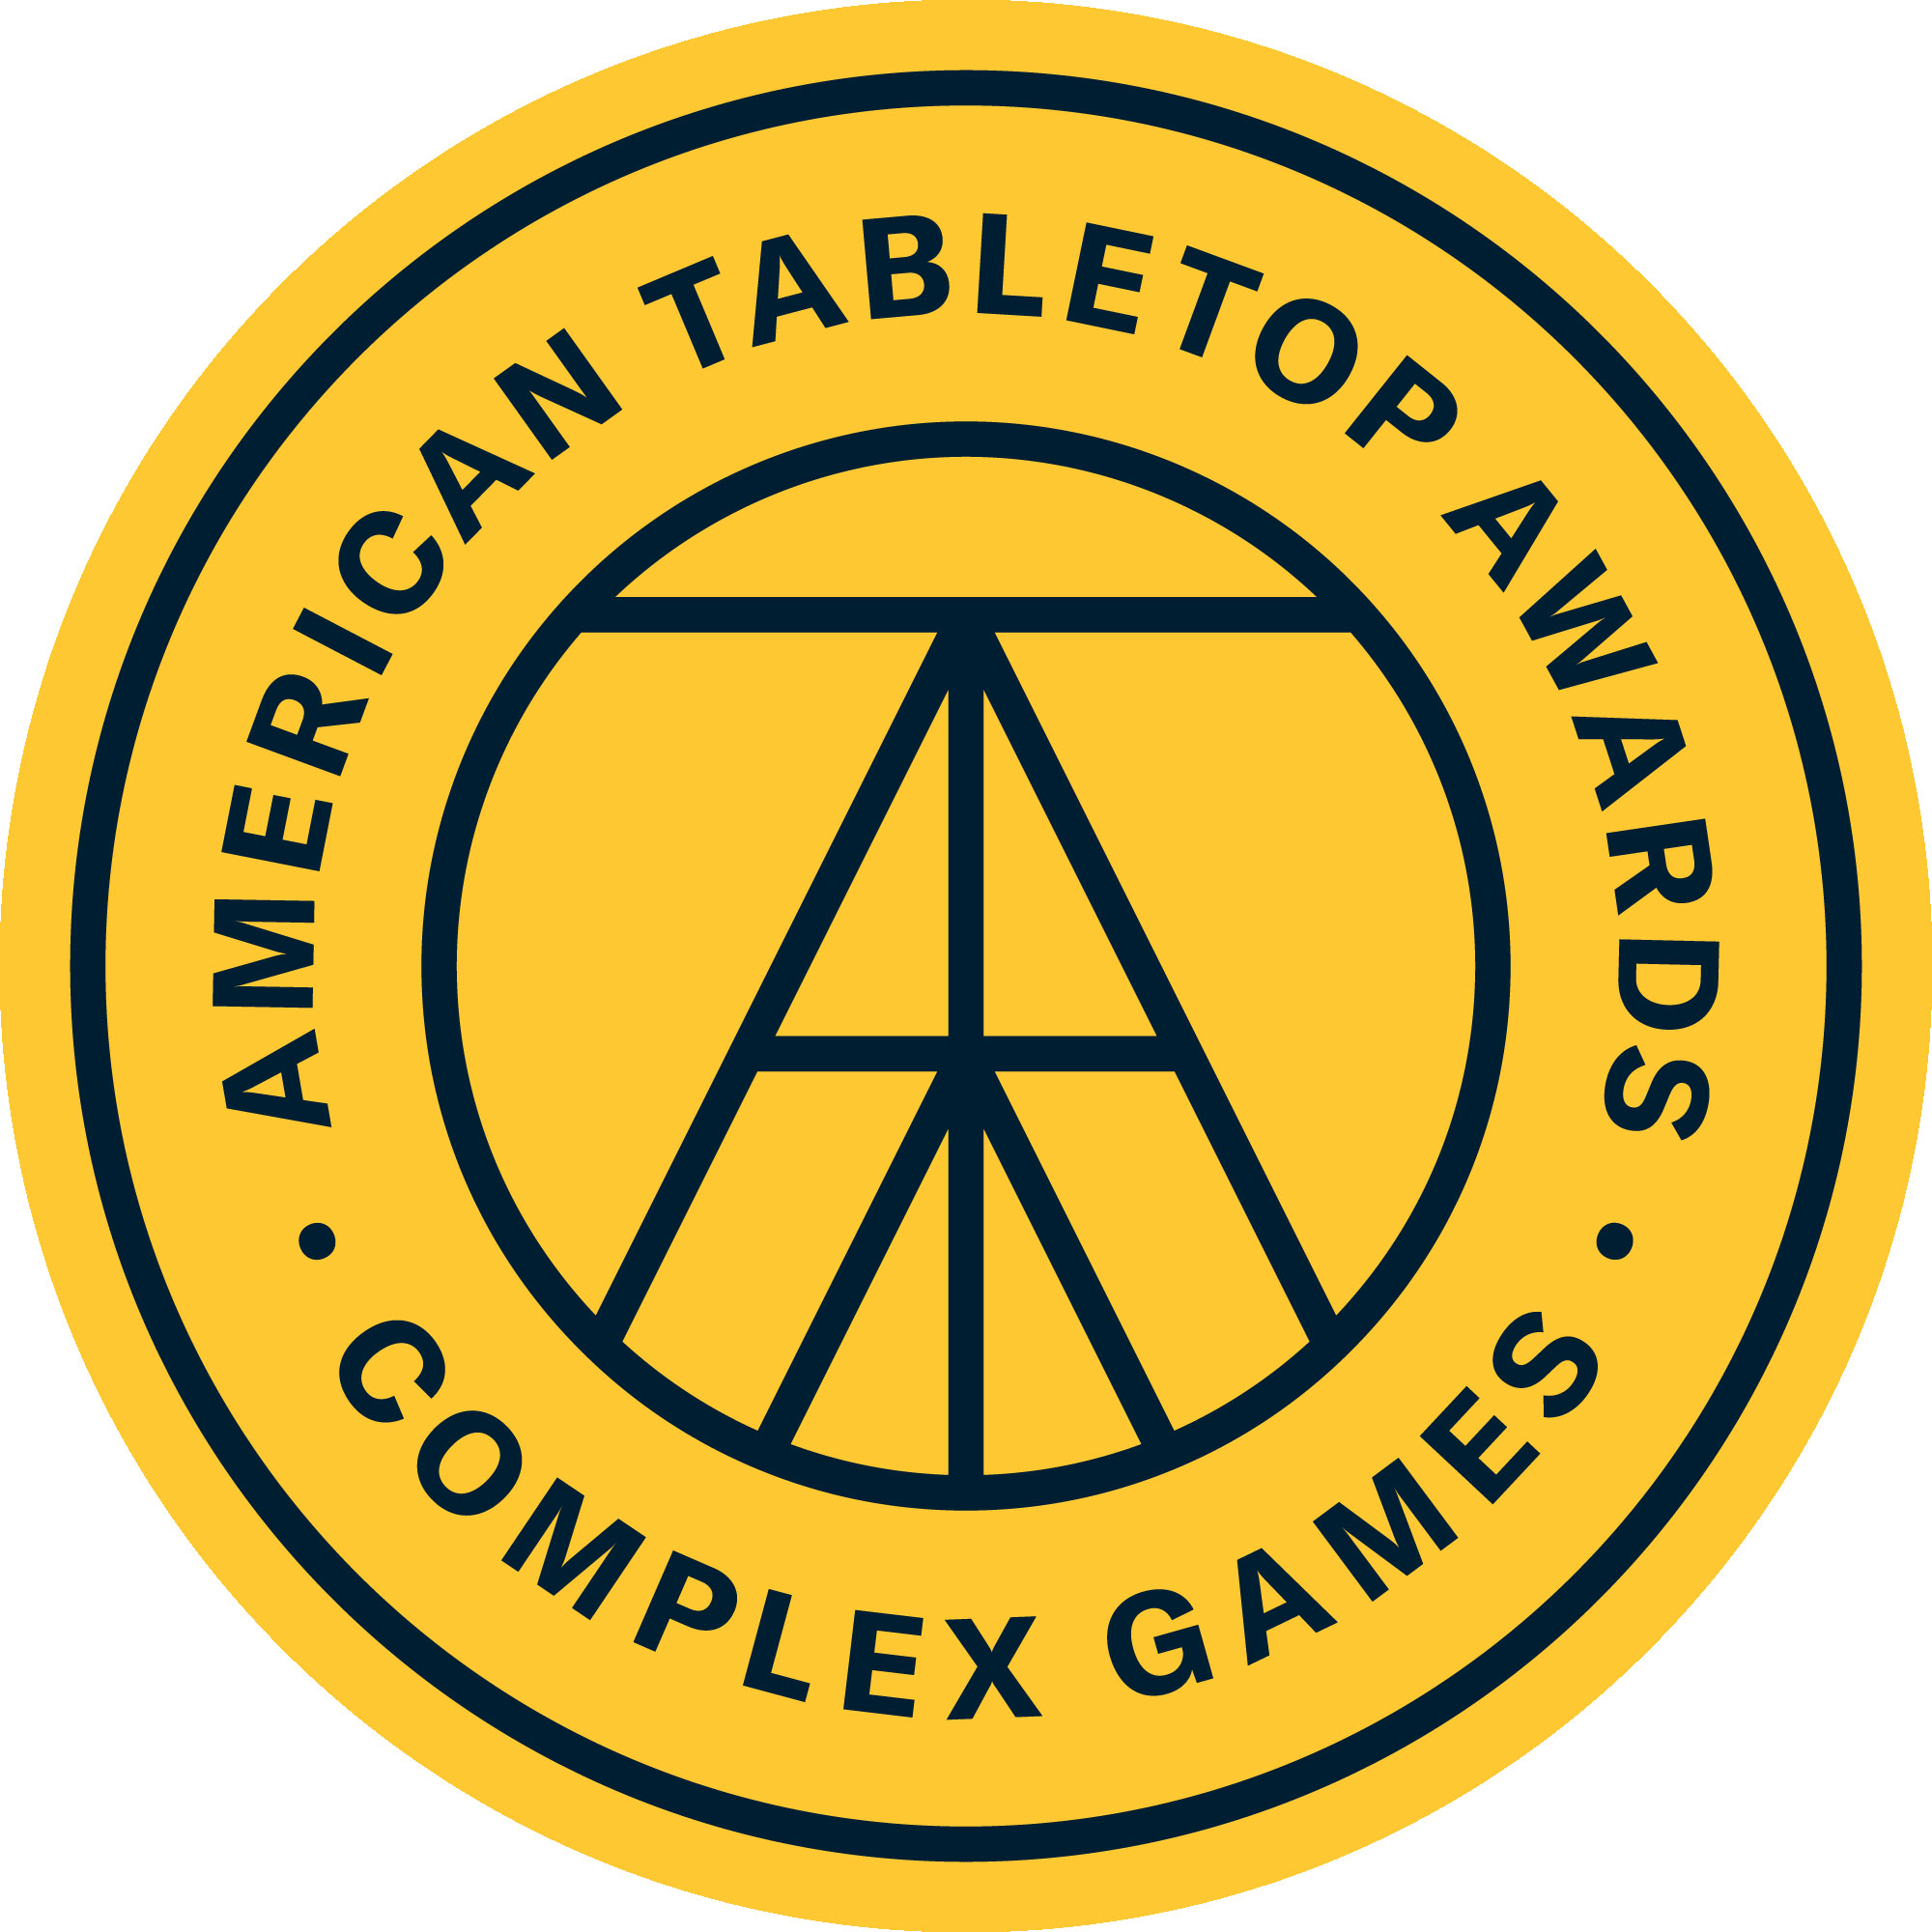 Complex Games er som navnet antyder mere komplekse og ofte strategiske spil. Disse anvender ofte mange spilmekanismer og læner sig mod længere spilletider end de andre kategorier.